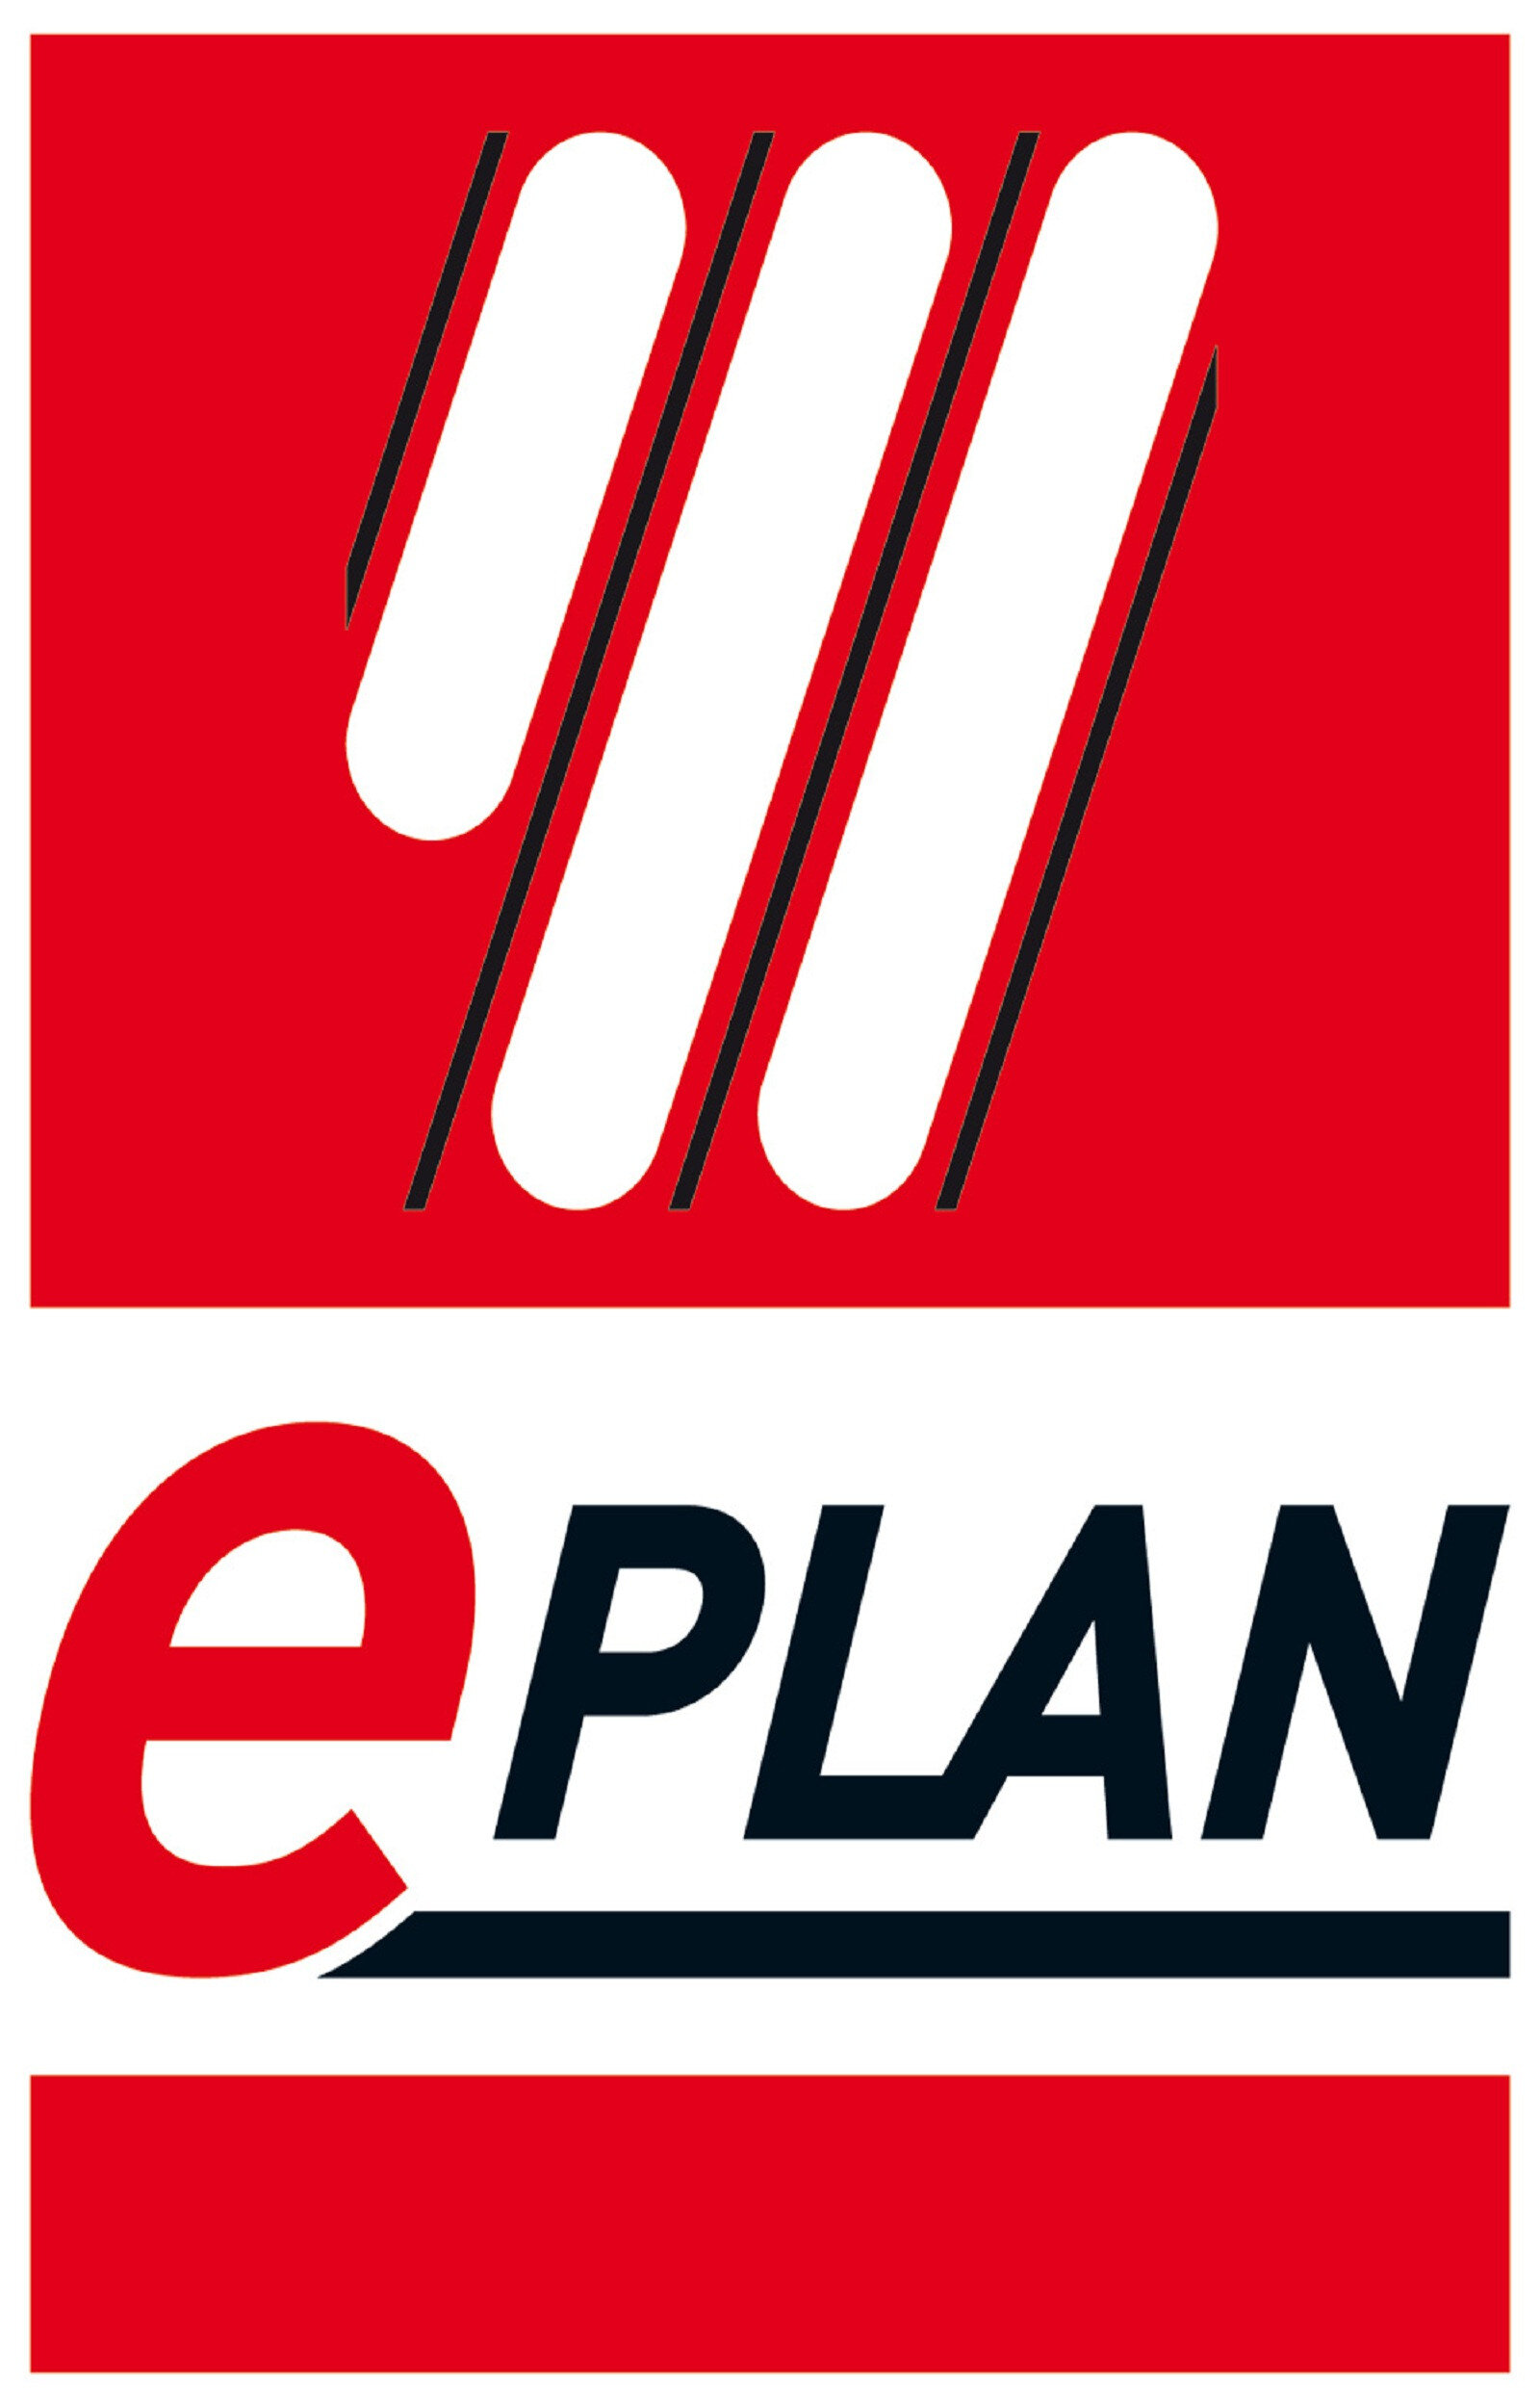 eplan-logo.jpg